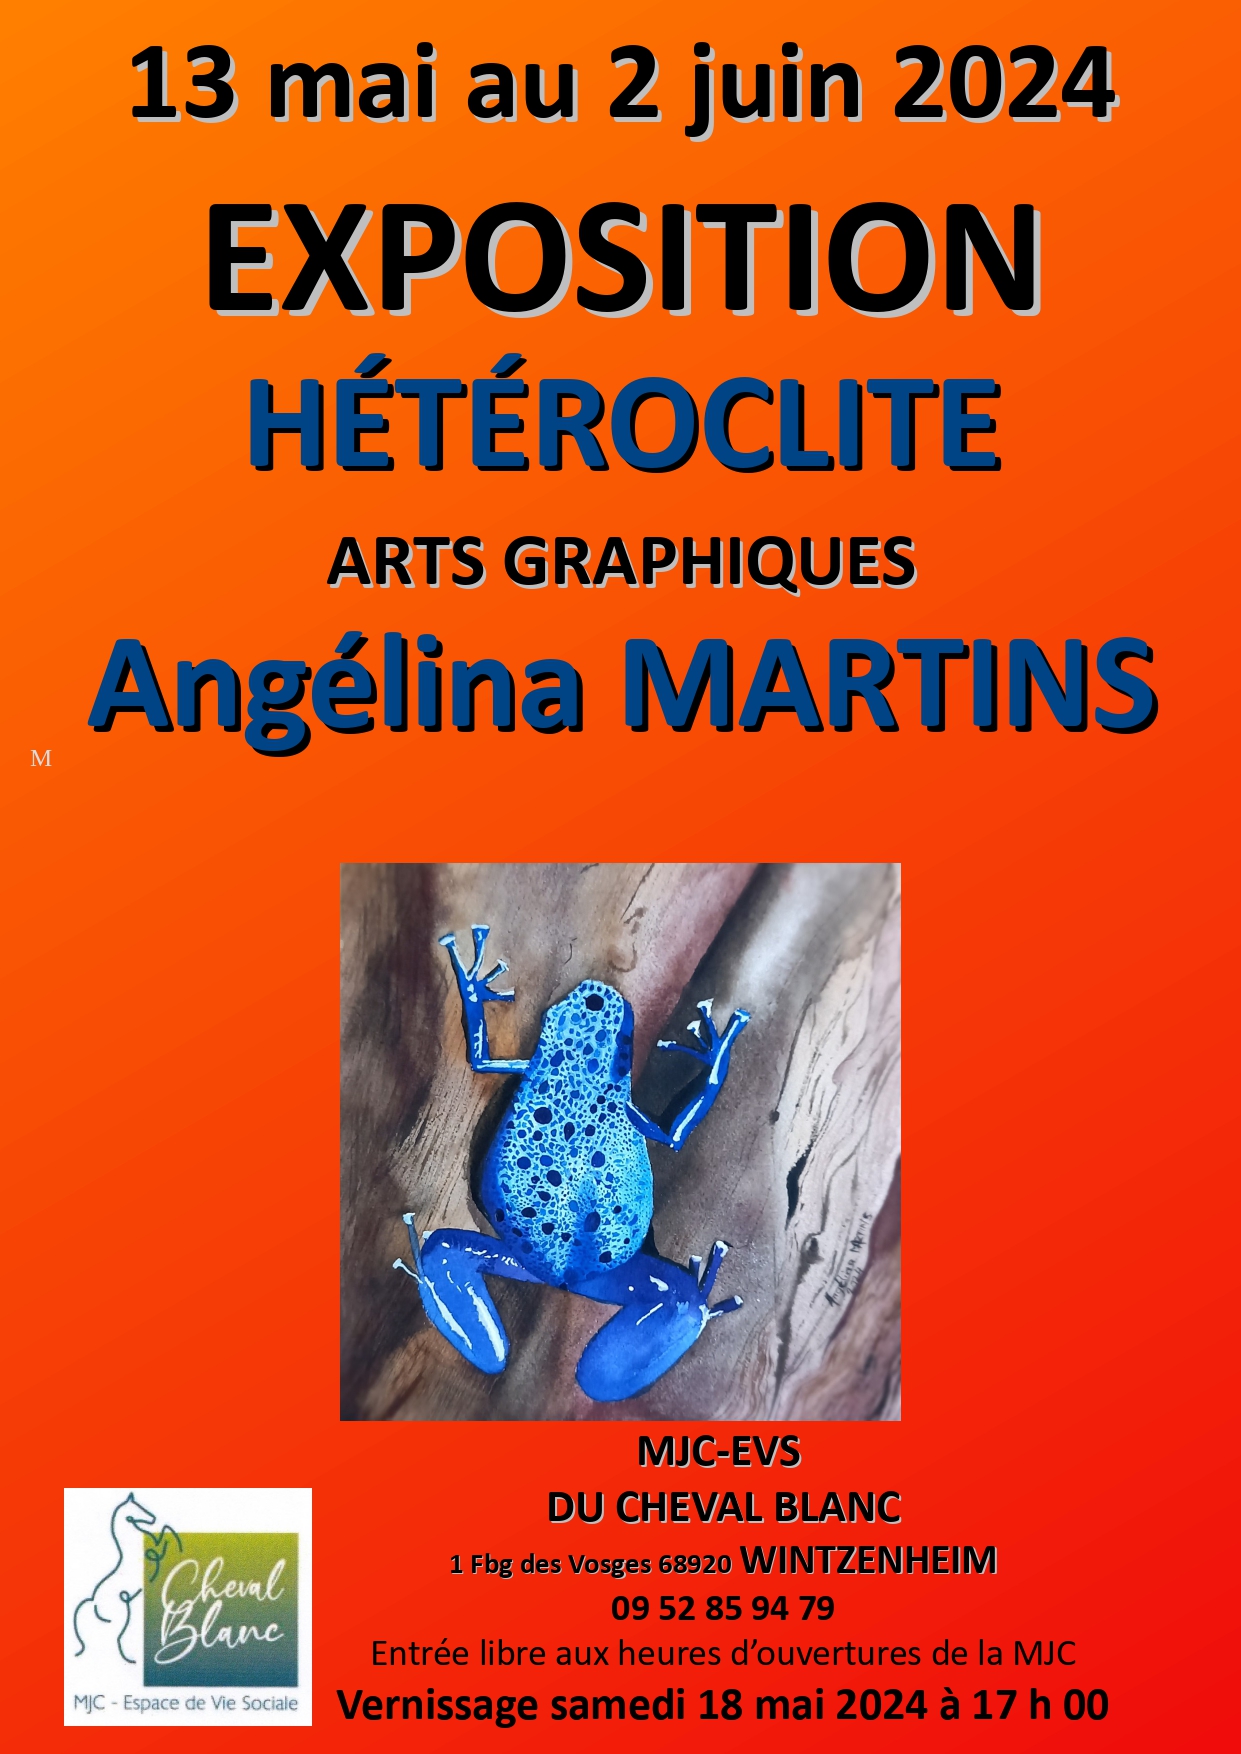 "HÉTÉROCLITE" - arts graphiques, une exposition... Du 13 mai au 2 juin 2024